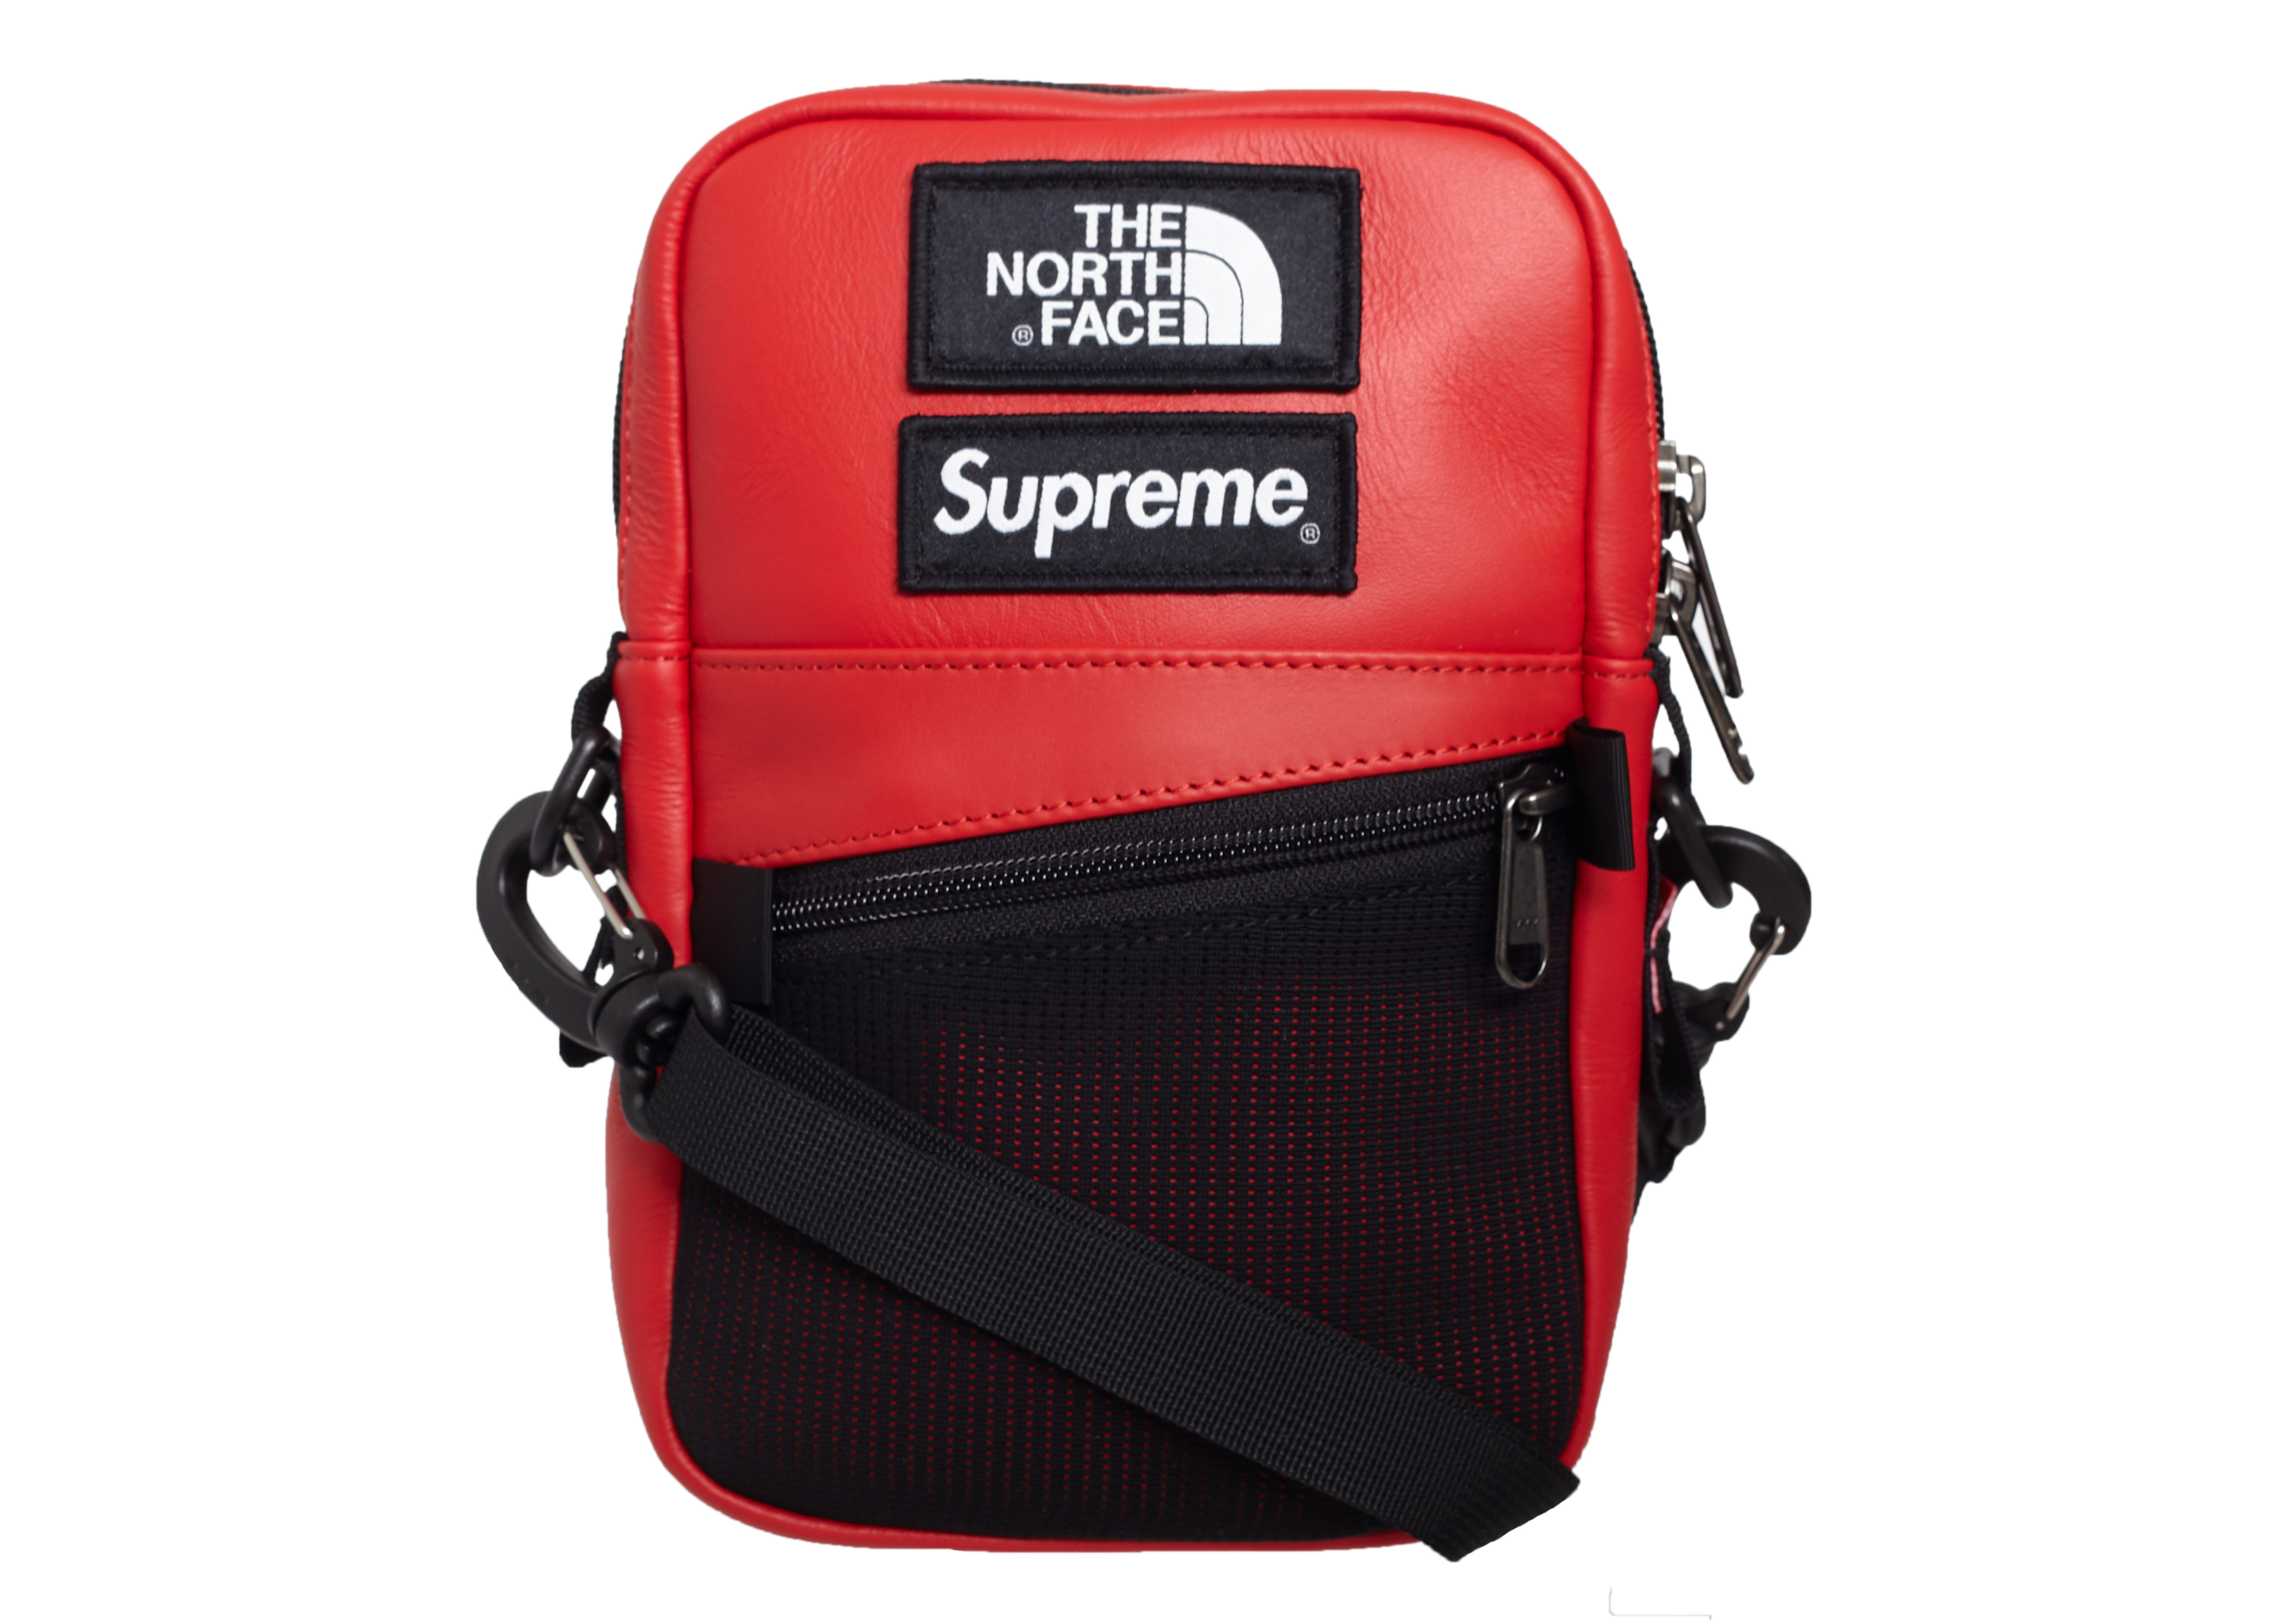 tnf x supreme bag